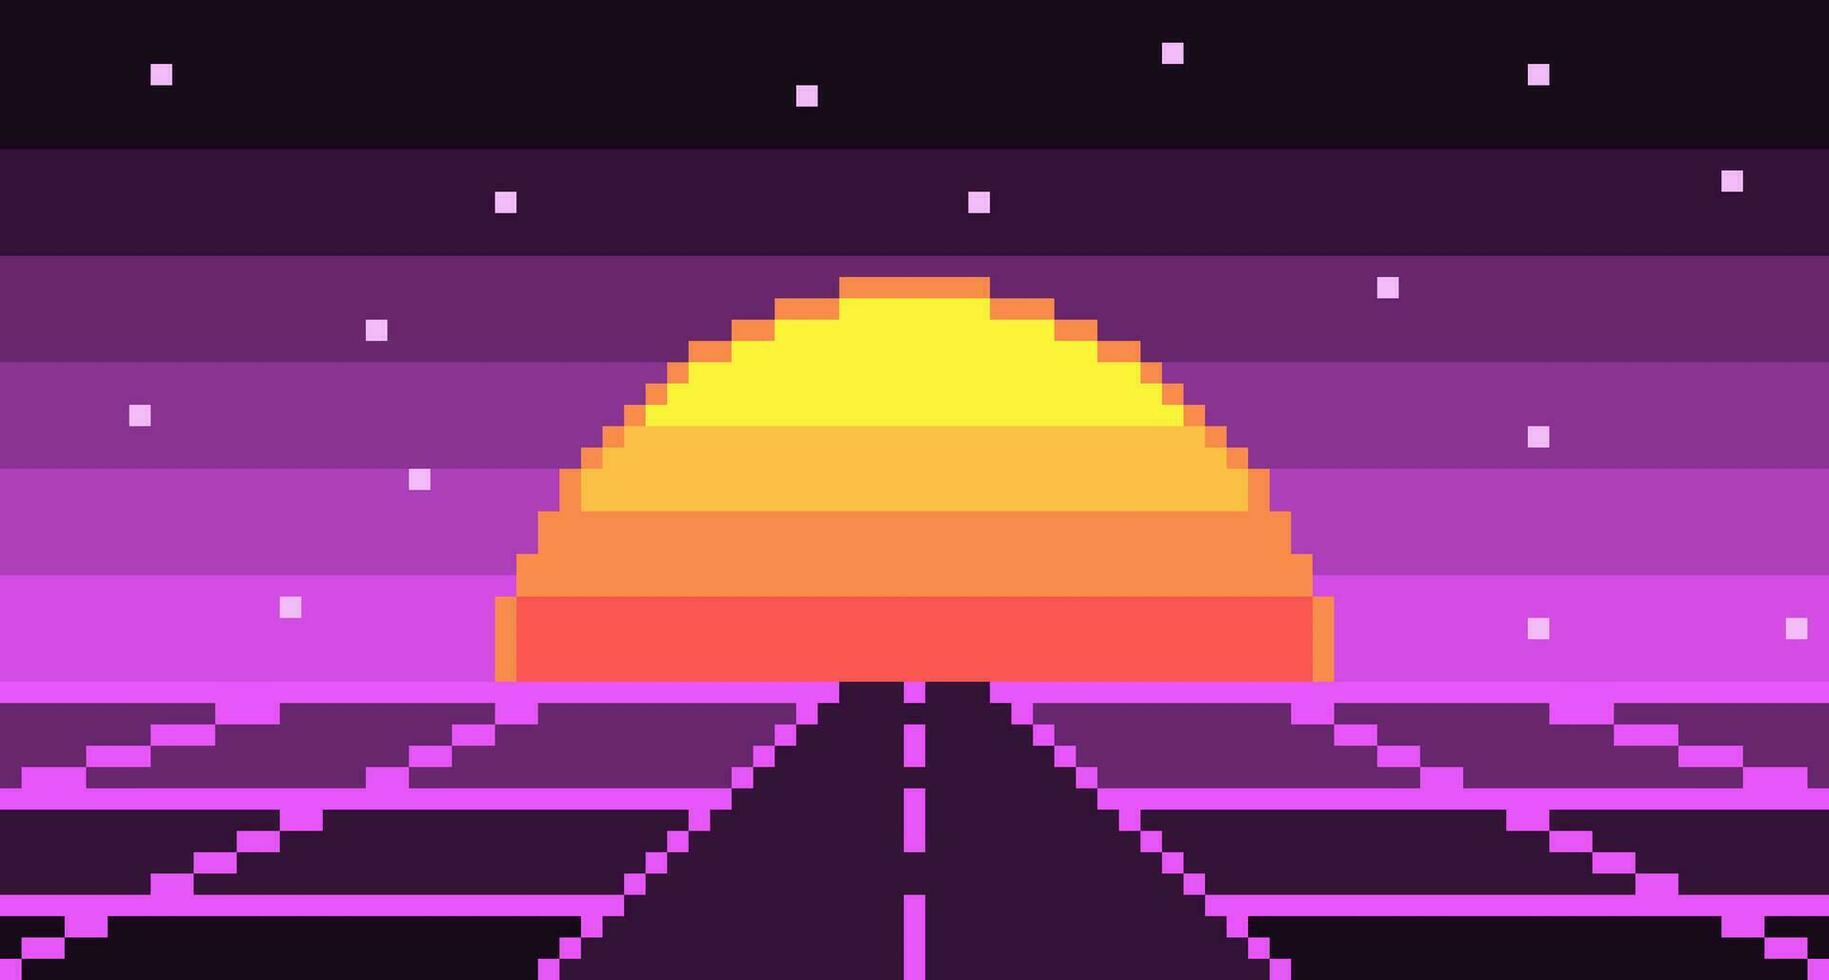 pixel strada synthwave paesaggio con sole e stelle sfondo. neon autostrada 8 bit vuoto viola anni 80 griglia con cyberpunk a strisce luminare. elettronico viola splendore nel anni 90 vettore stile